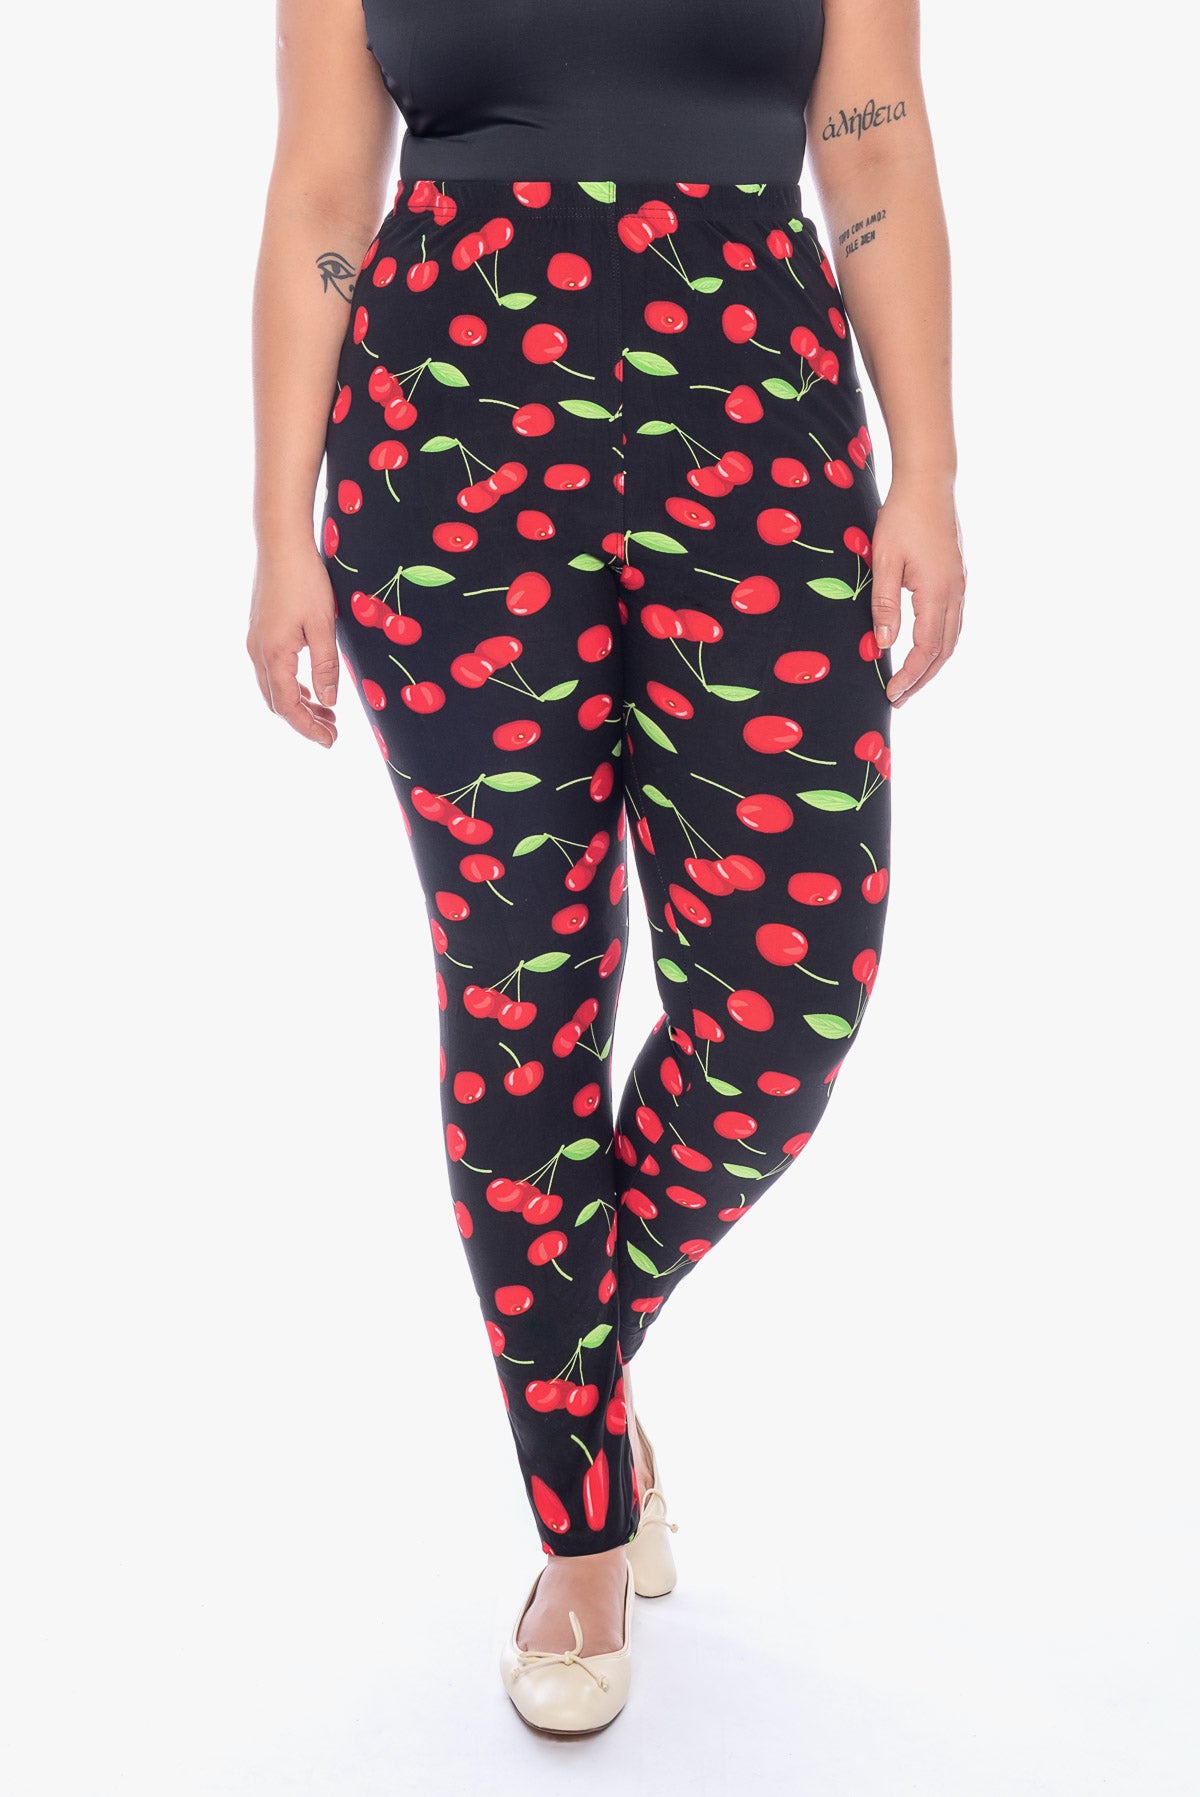 LILLY cherries printed leggings